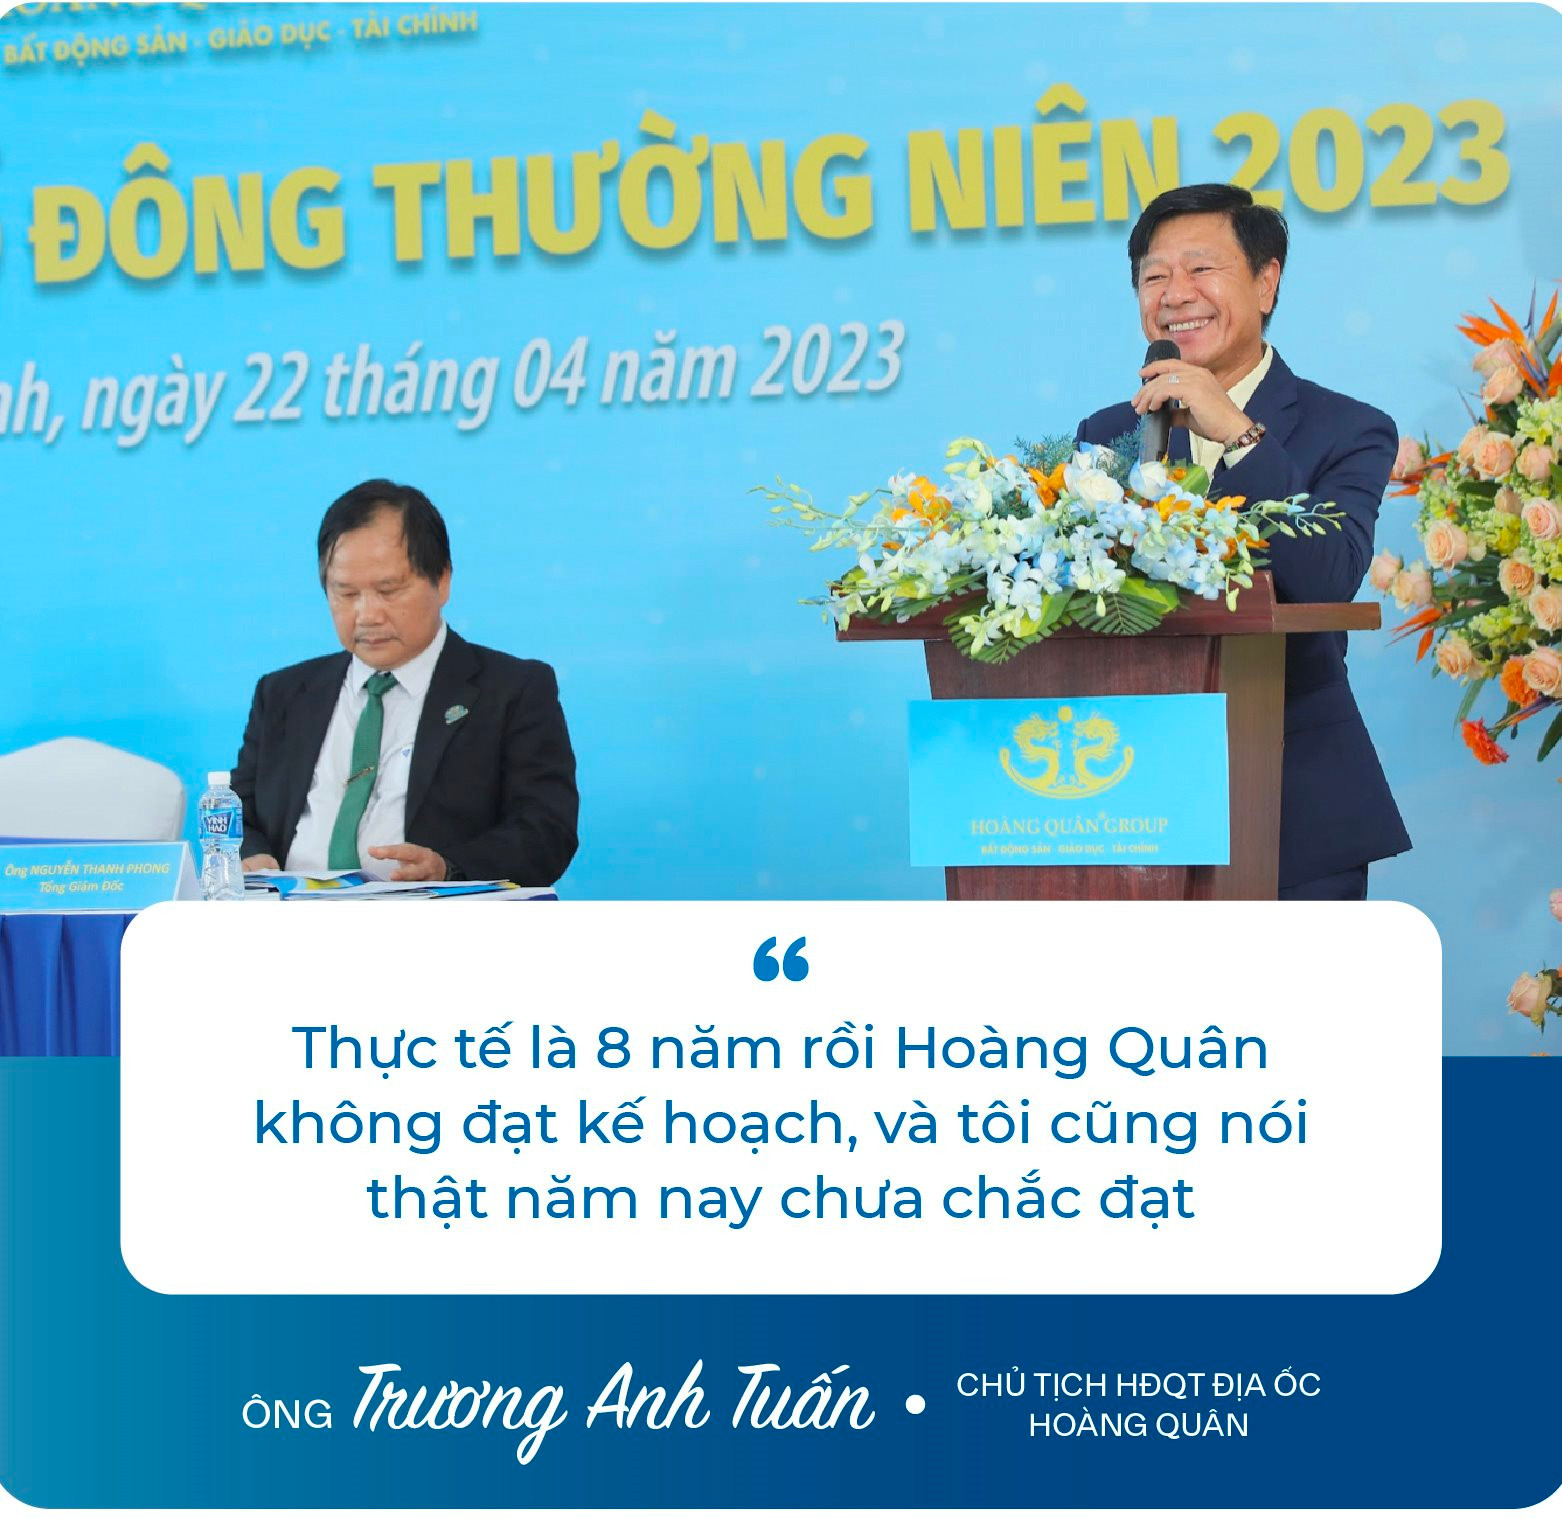 Chủ tịch Trương Anh Tuấn: ﻿“8 năm rồi Hoàng Quân (HQC) không đạt kế hoạch, và tôi cũng nói thật năm nay chưa chắc đạt” - Ảnh 5.